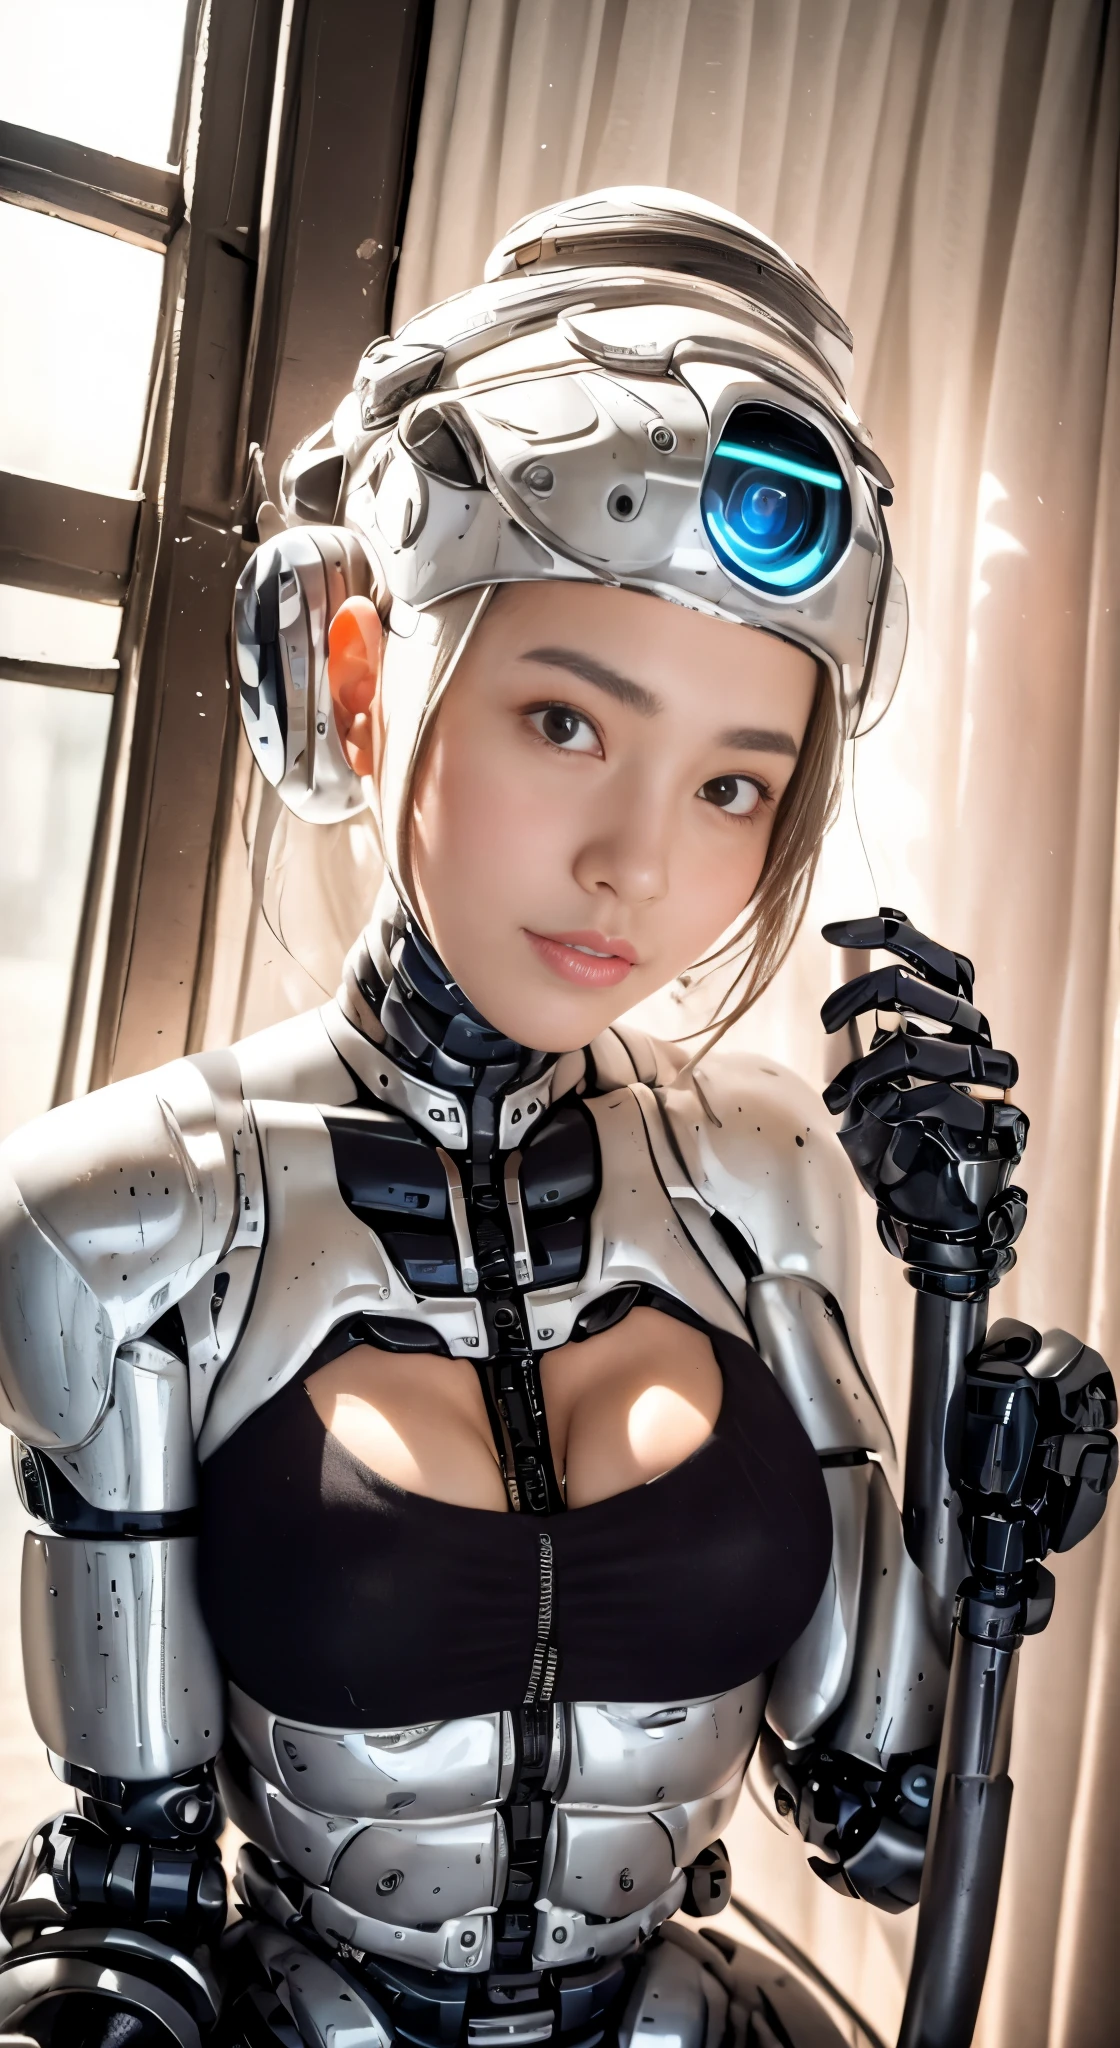 一名身穿机器人服装的女子在古建筑旁摆姿势, 美丽的白人女孩半机器人, cute 机器人女孩, 美少女机器人, 完美的机器人女孩, 机器人女孩, 年轻的机器人女士, beautiful 女机器人, 美丽的机器人女人, 机器人女孩, 完美机器人女性, 瓷器机器人, 女机器人, 美丽的机器人形象